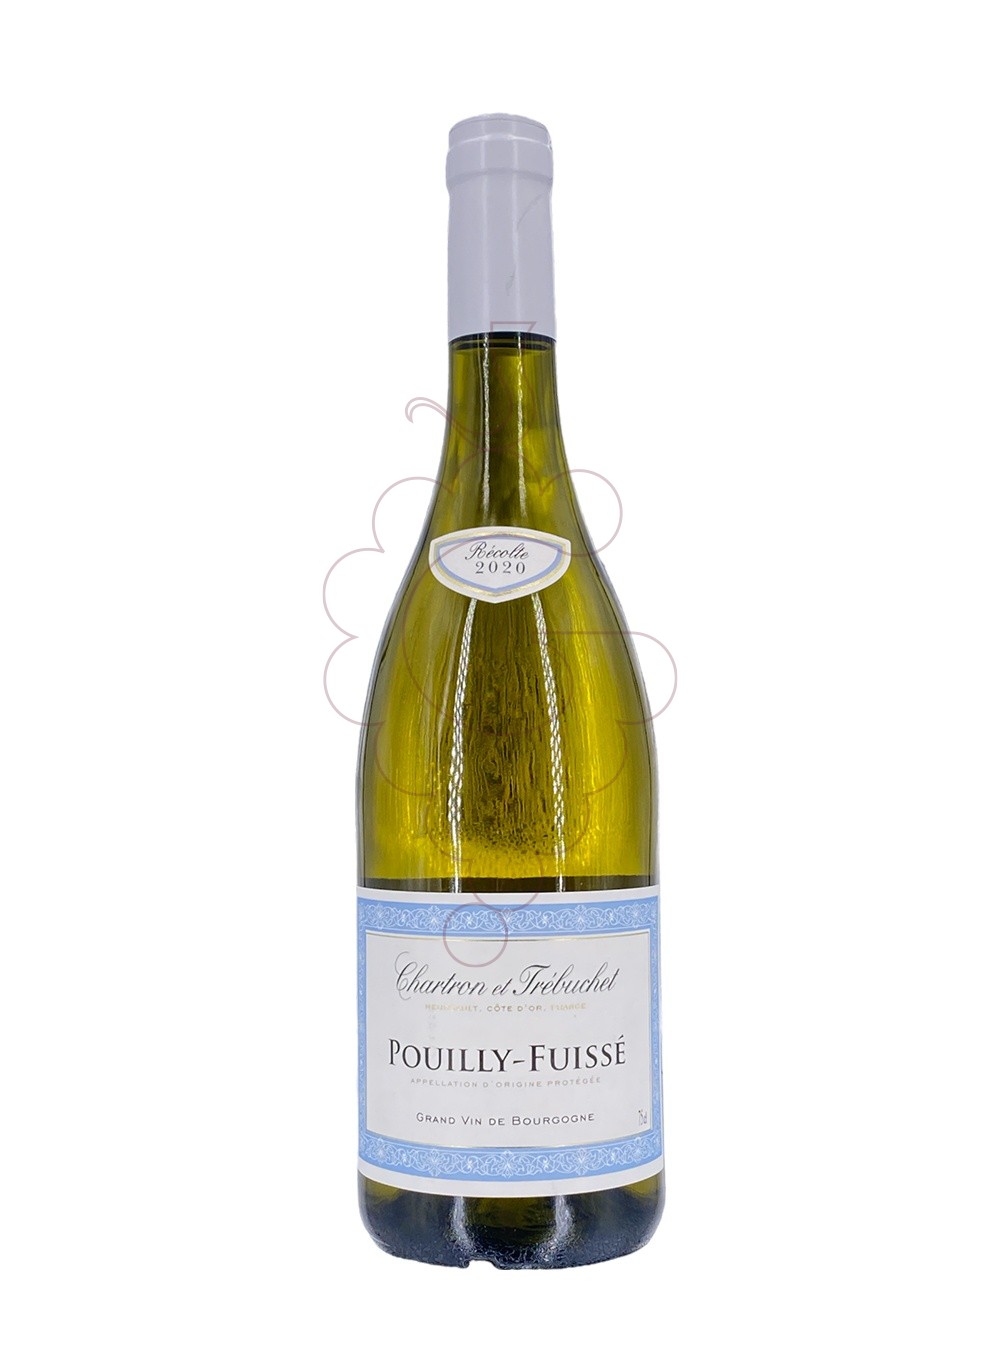 Photo Chartron et Trebuchet Pouilly-Fuissé vin blanc